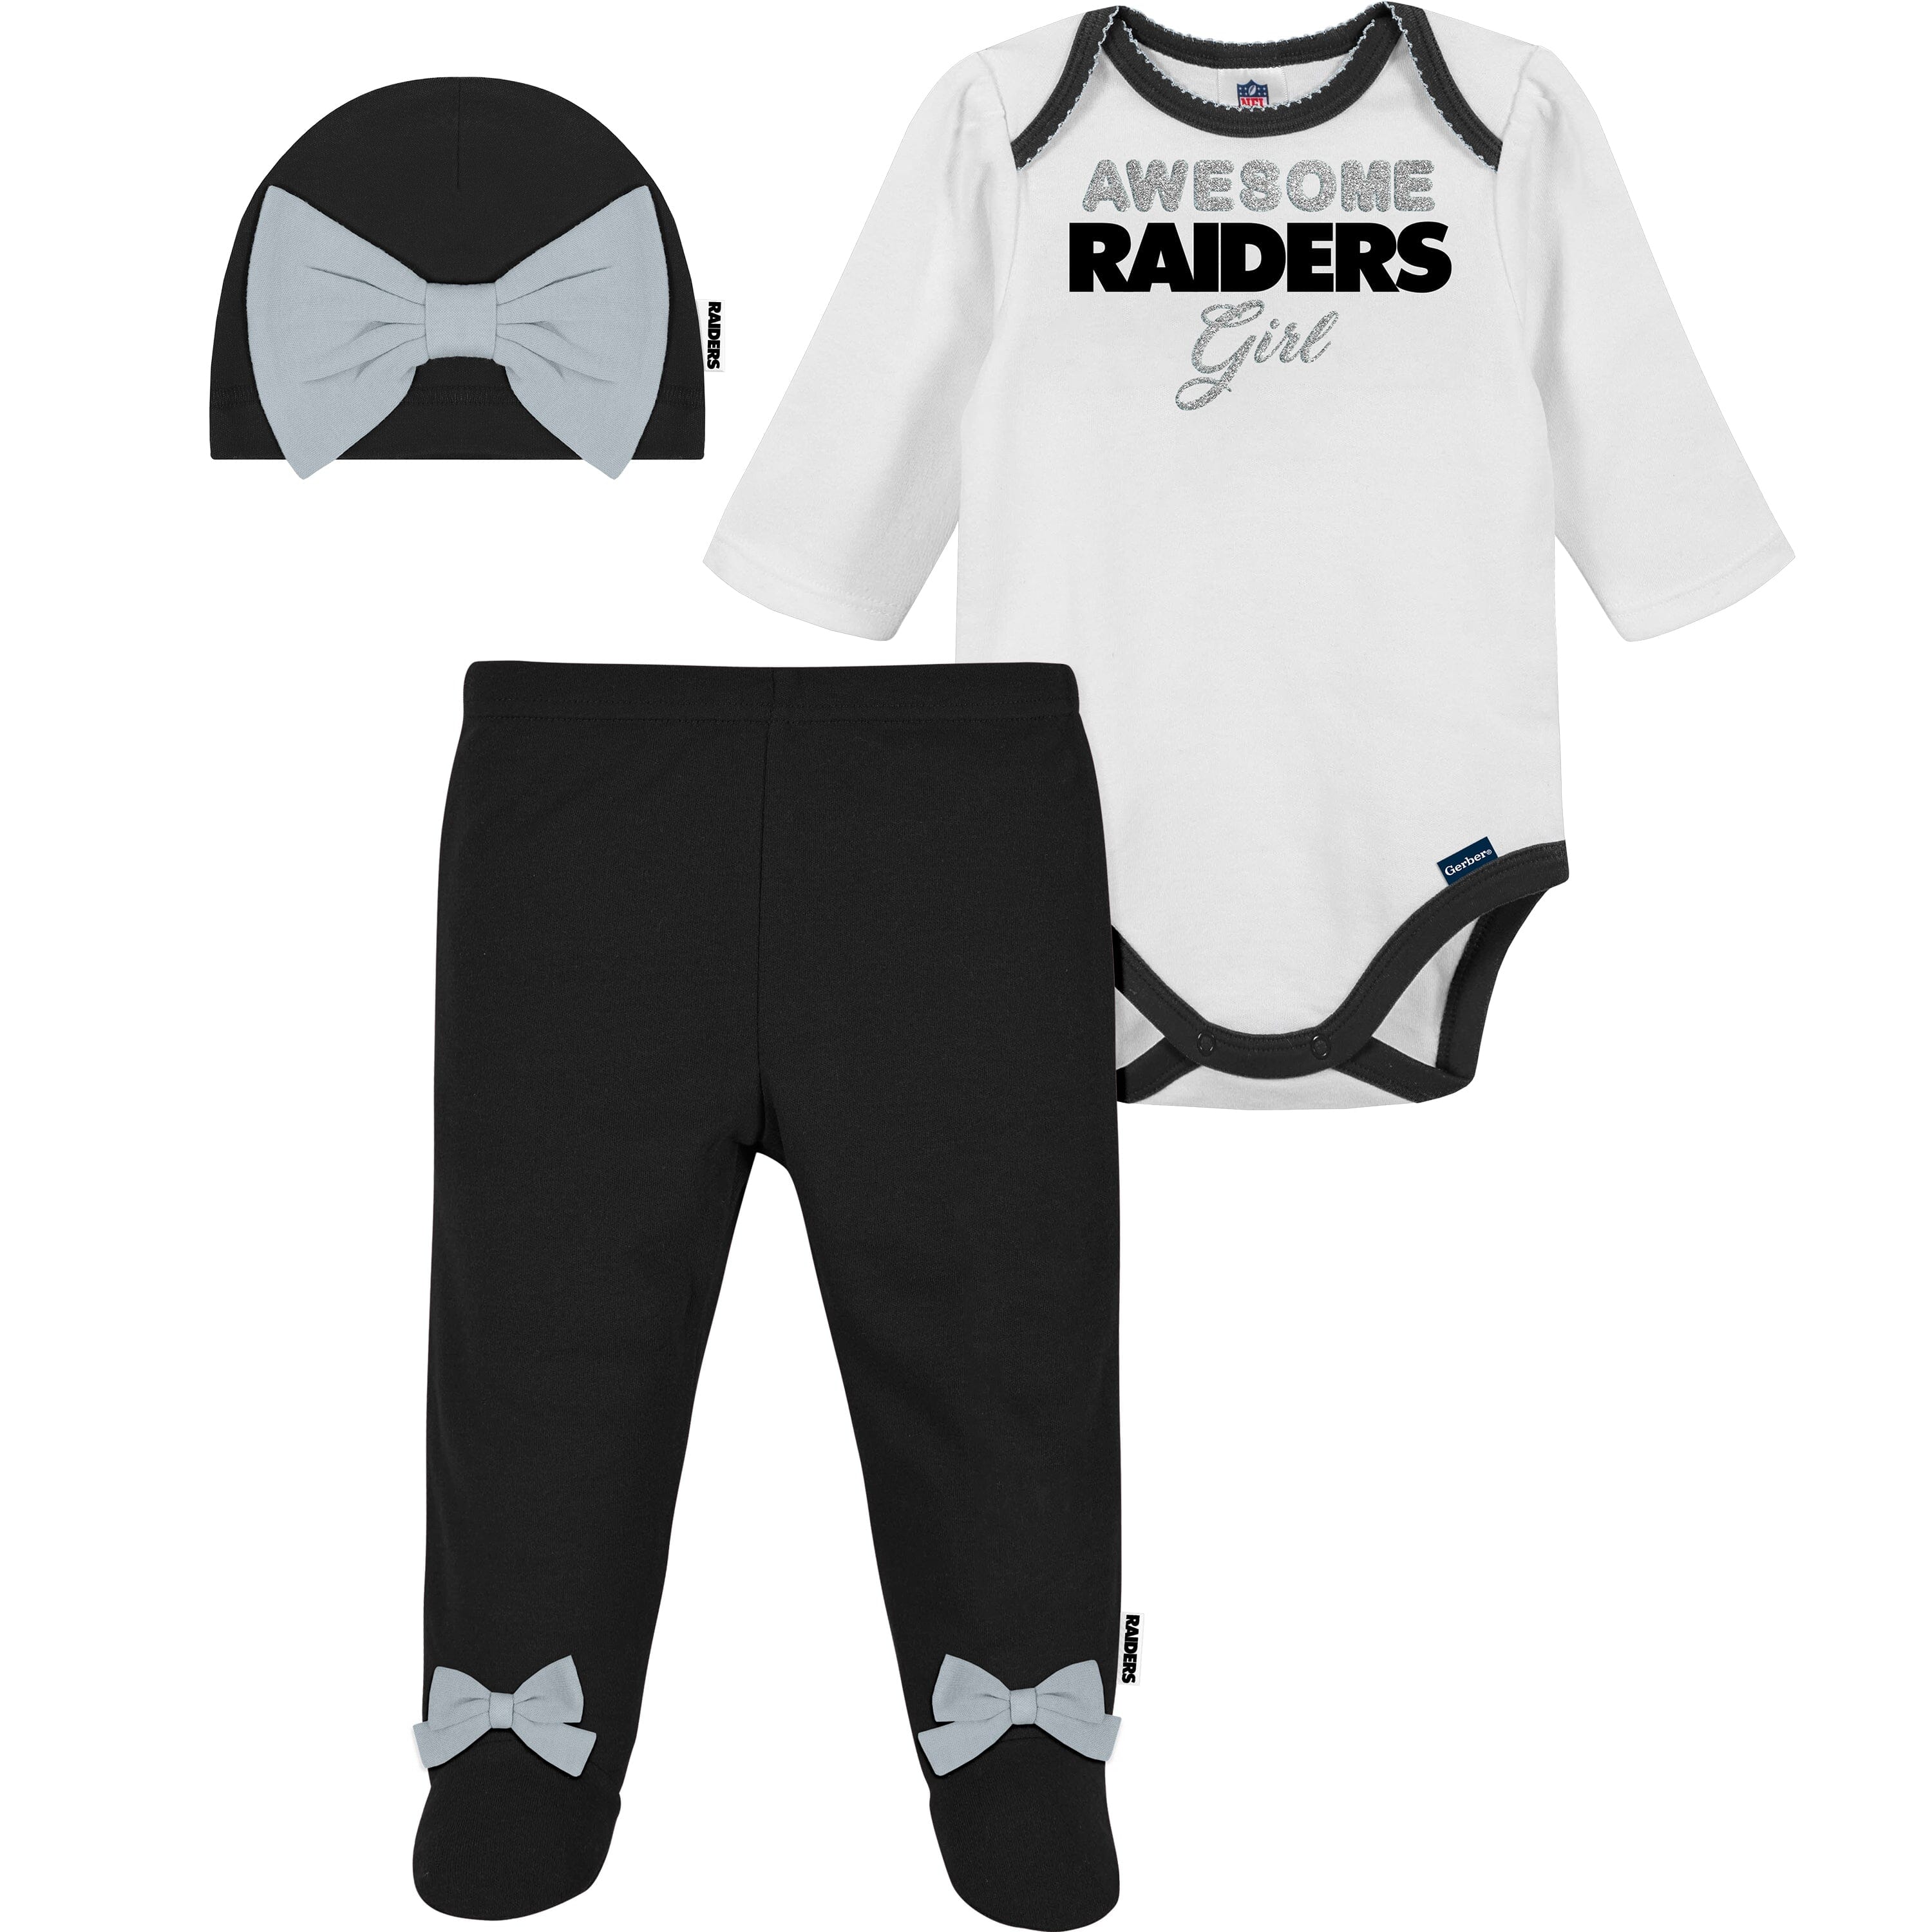 Raiders baby/newborn clothes girl Raiders baby gift Las vegas